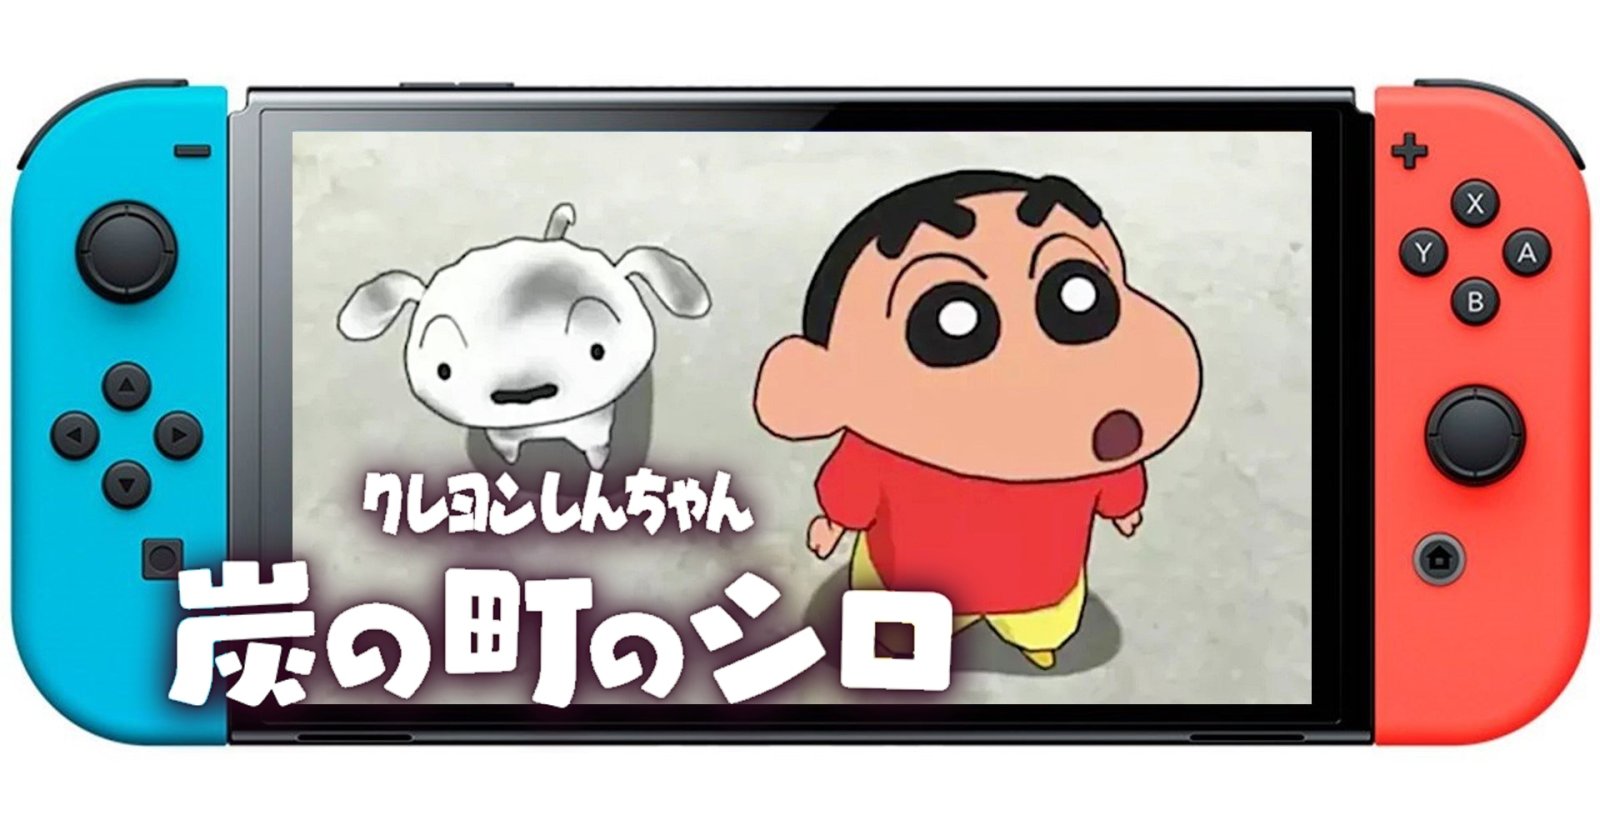 [รีวิวเกม] ‘Shin chan: Shiro of Coal’ ชินจังตะลุยดินแดนเหมืองถ่านหิน (Nintendo Switch)